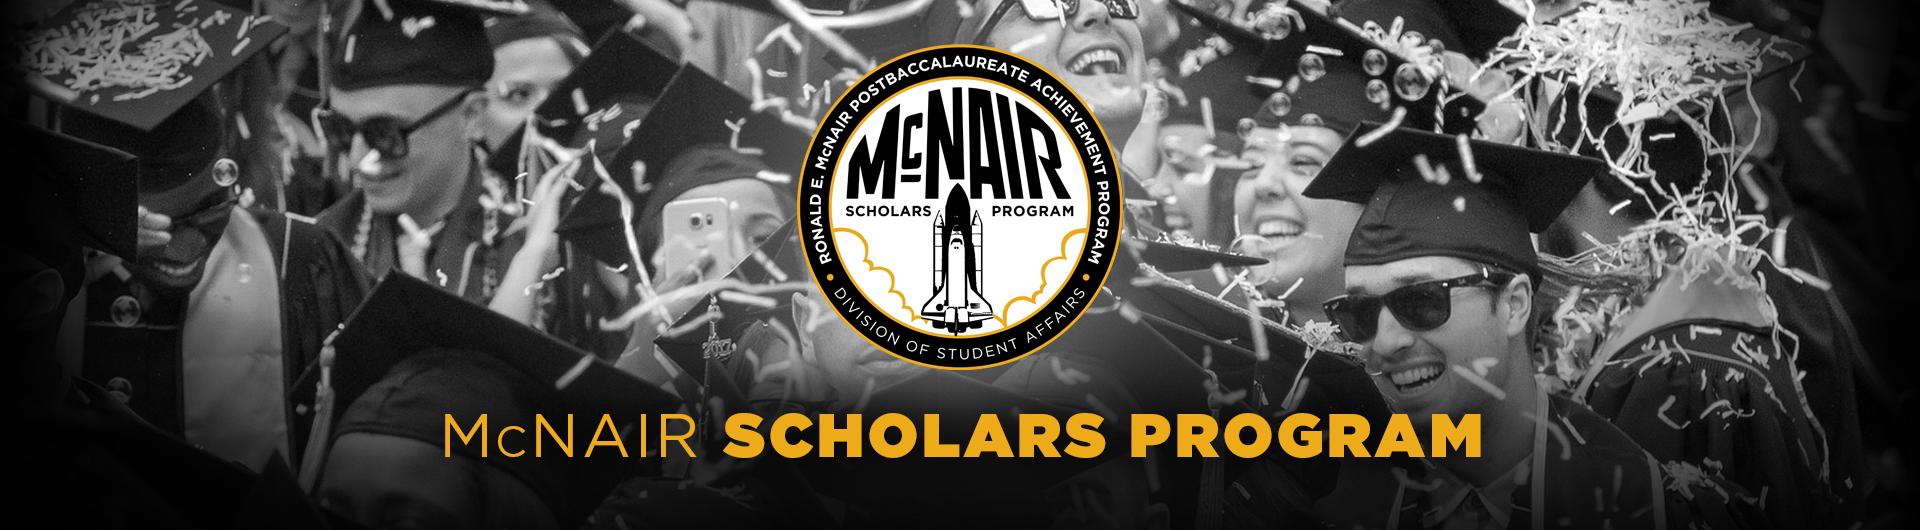 Banner for McNair Program